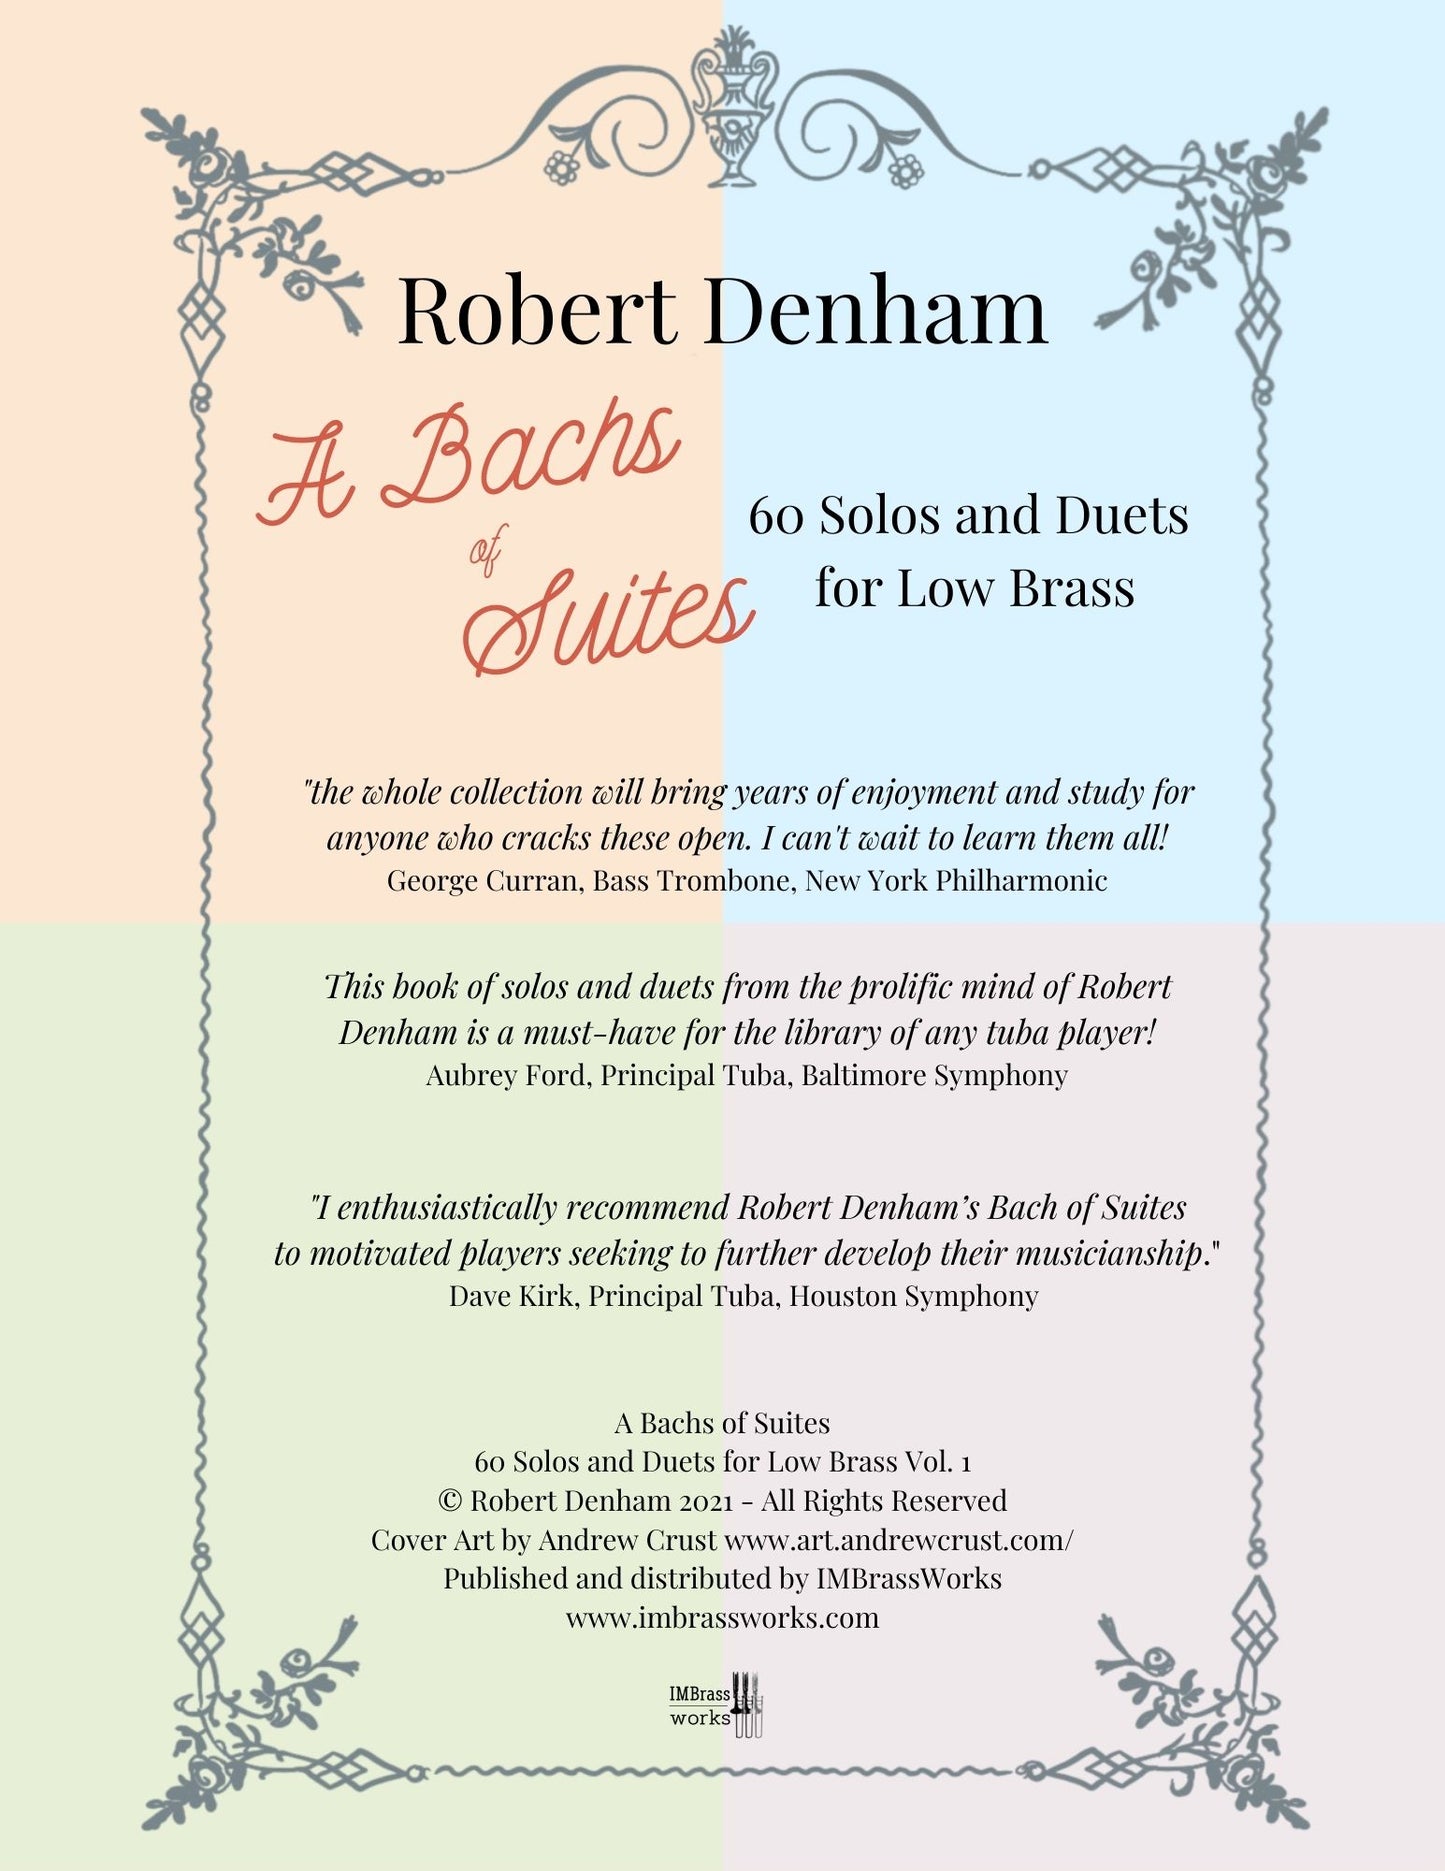 Robert Denham: A Bachs of Suites